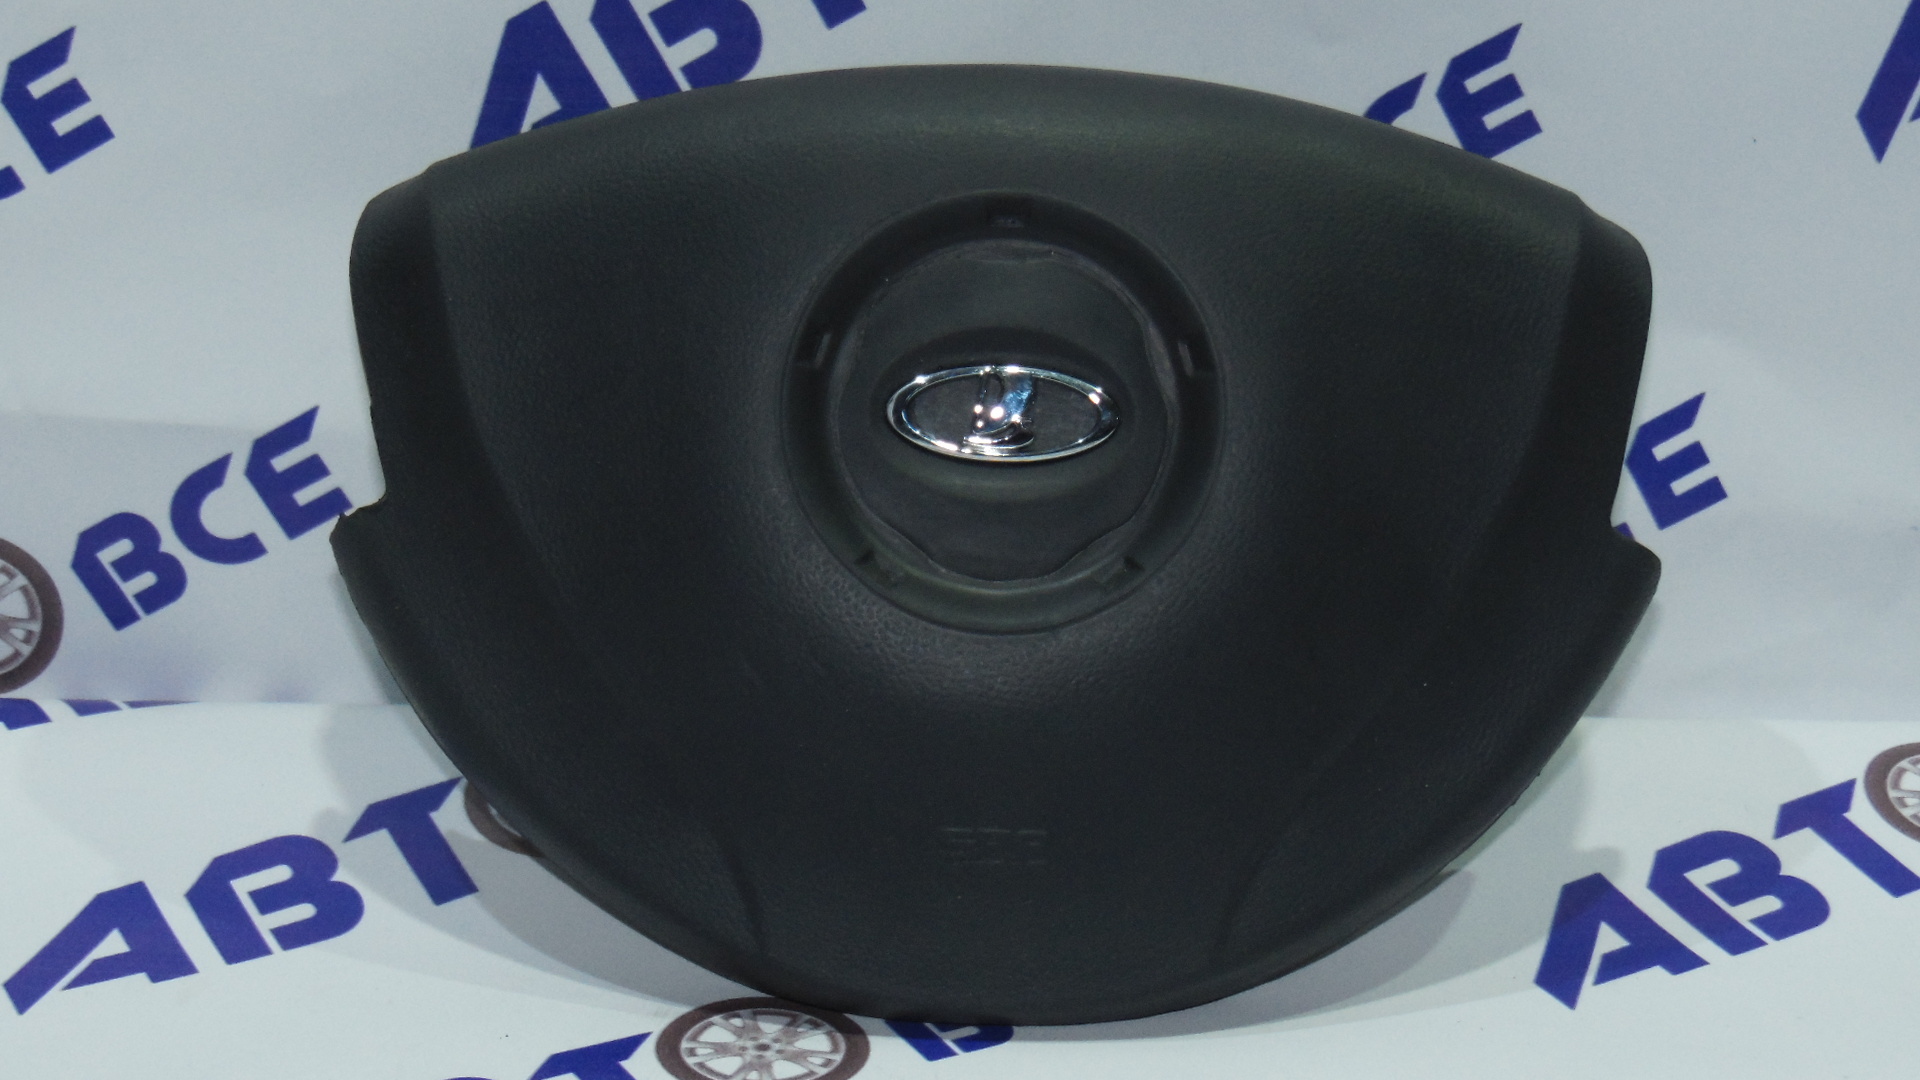 Крышка руля - кнопка сигнала - заглушка муляж Airbag (в руль) Largus Самара